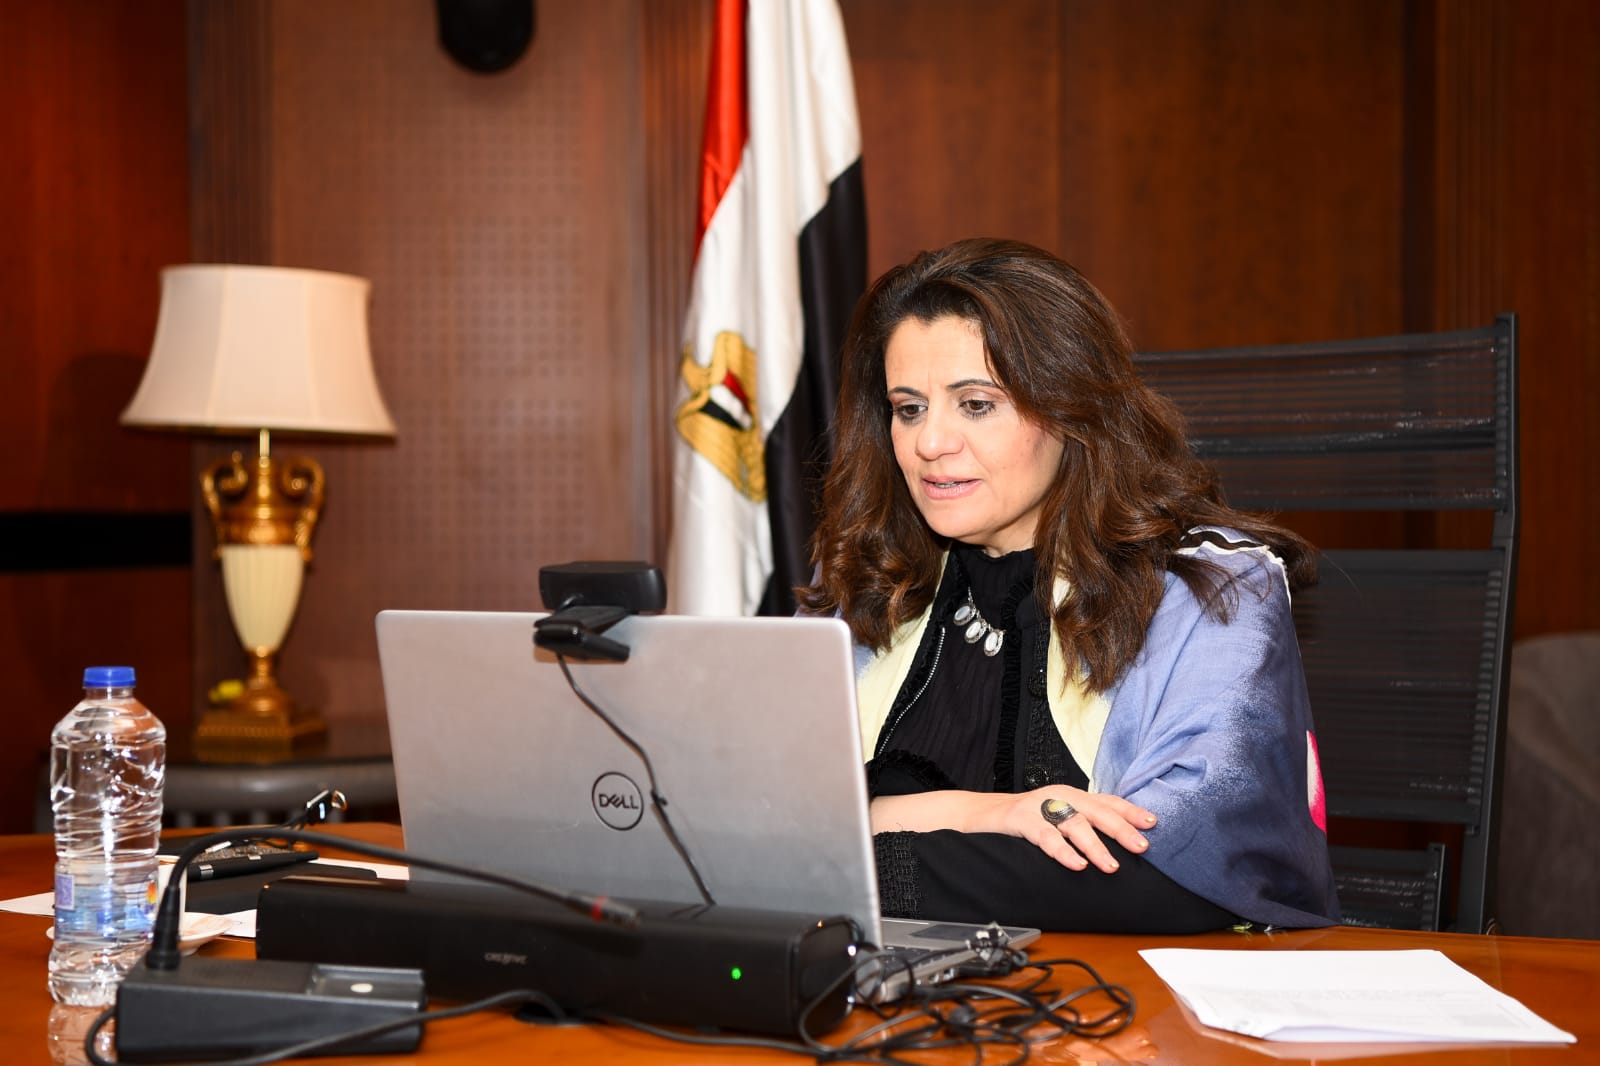 استجابة فورية من وزيرة الهجرة لاستغاثة فتاة مصرية في تركيا